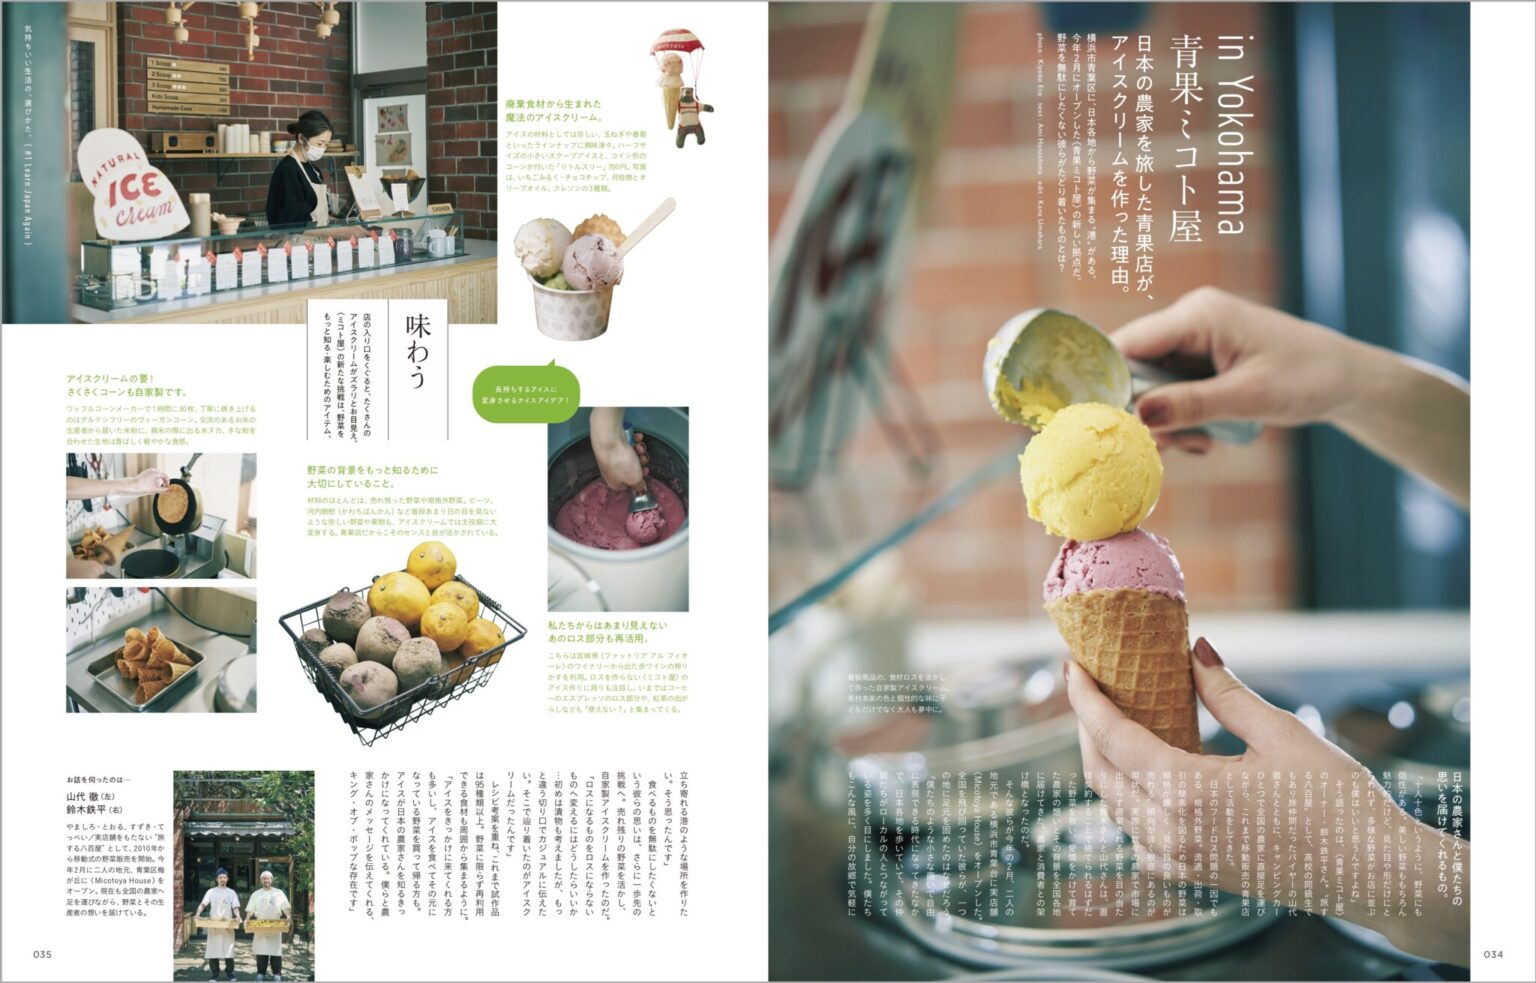 神奈川にある青果店〈Micotoya House〉では、売れ残りの野菜を使った自家製アイスクリームを考案。